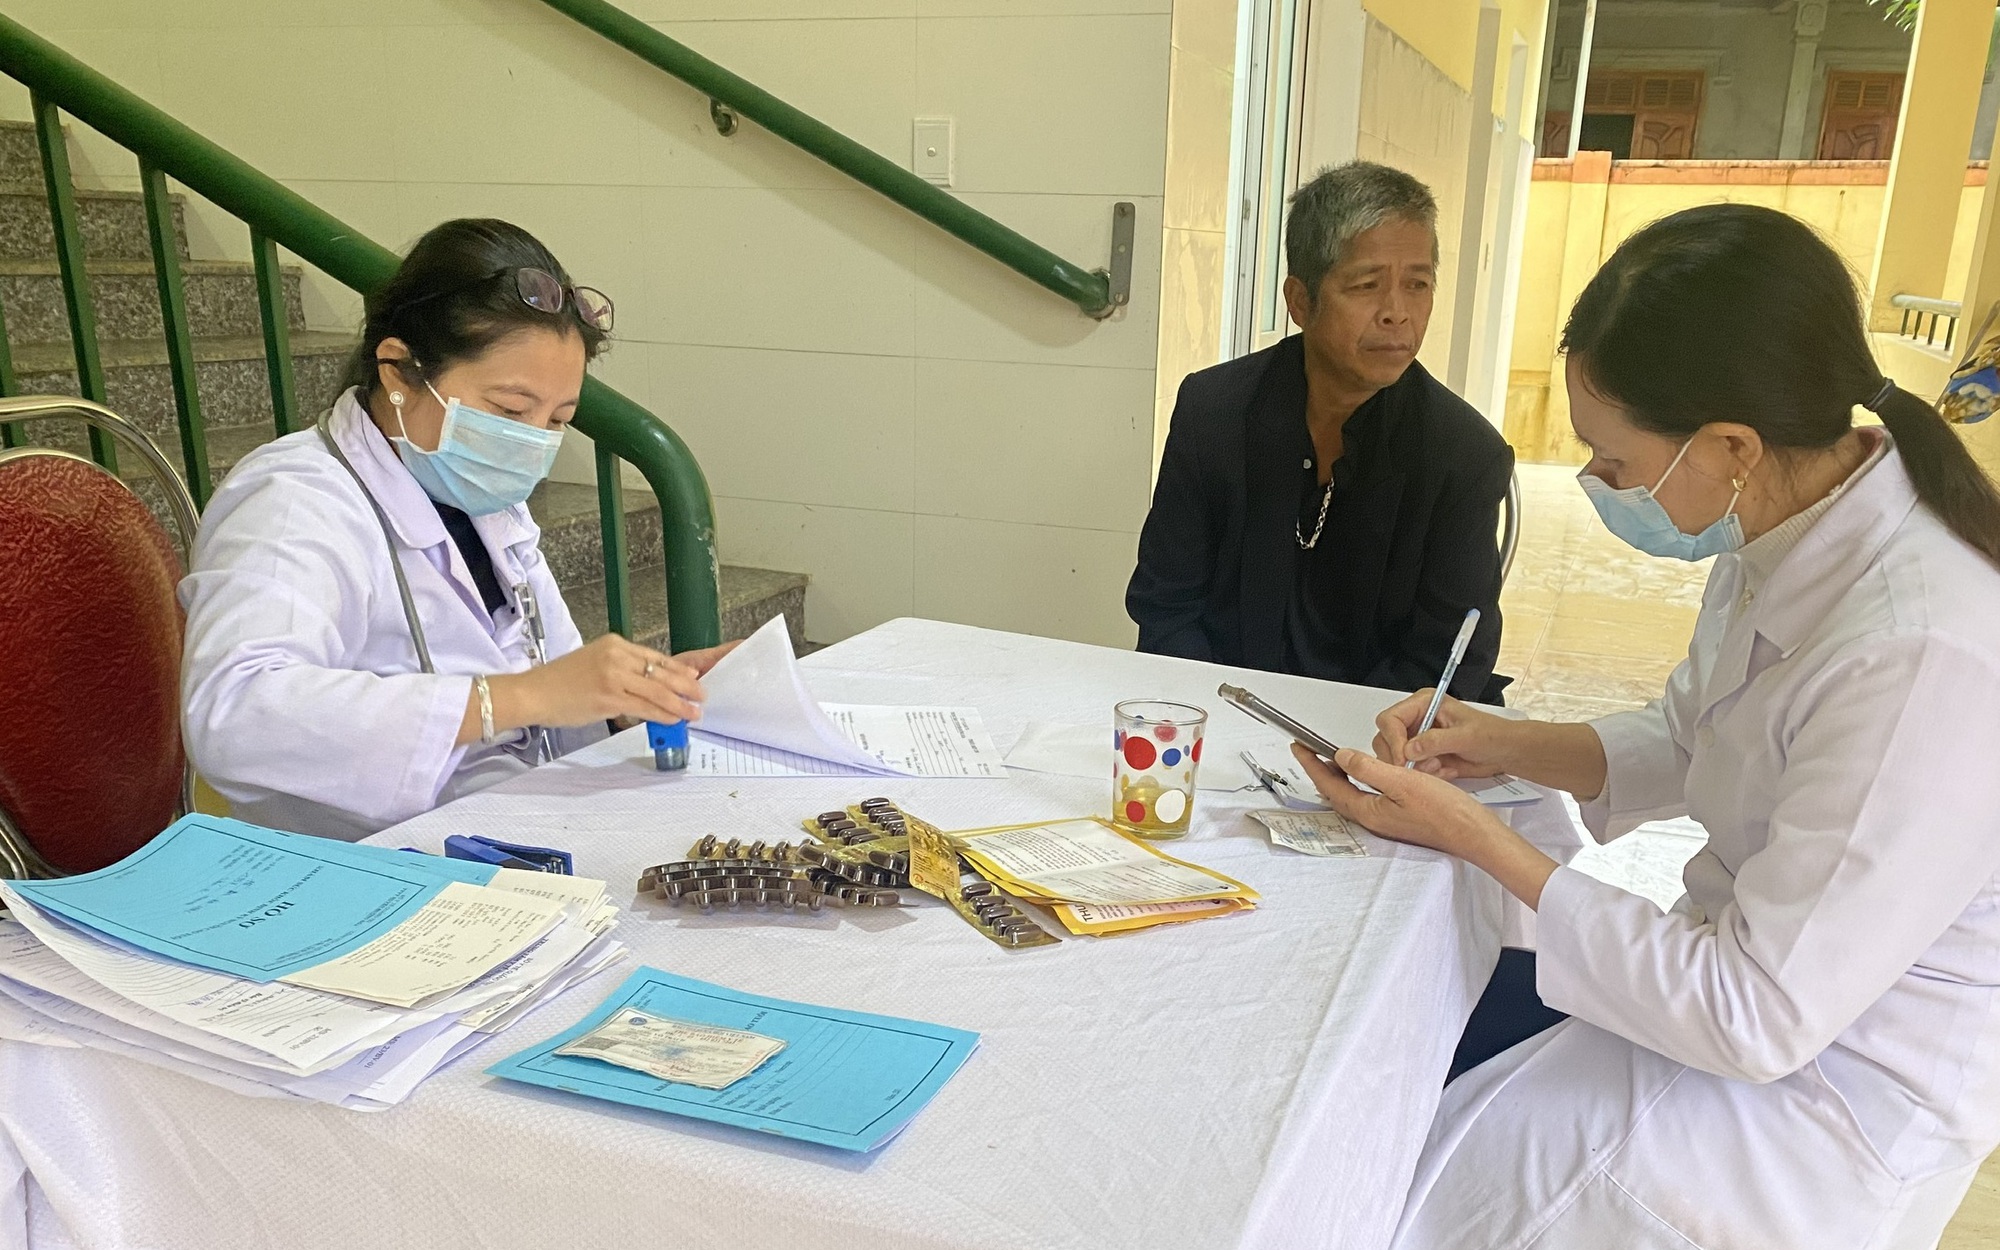 Chăm lo sức khỏe cho đồng bào dân tộc thiểu số và miền núi ở Quảng Trị